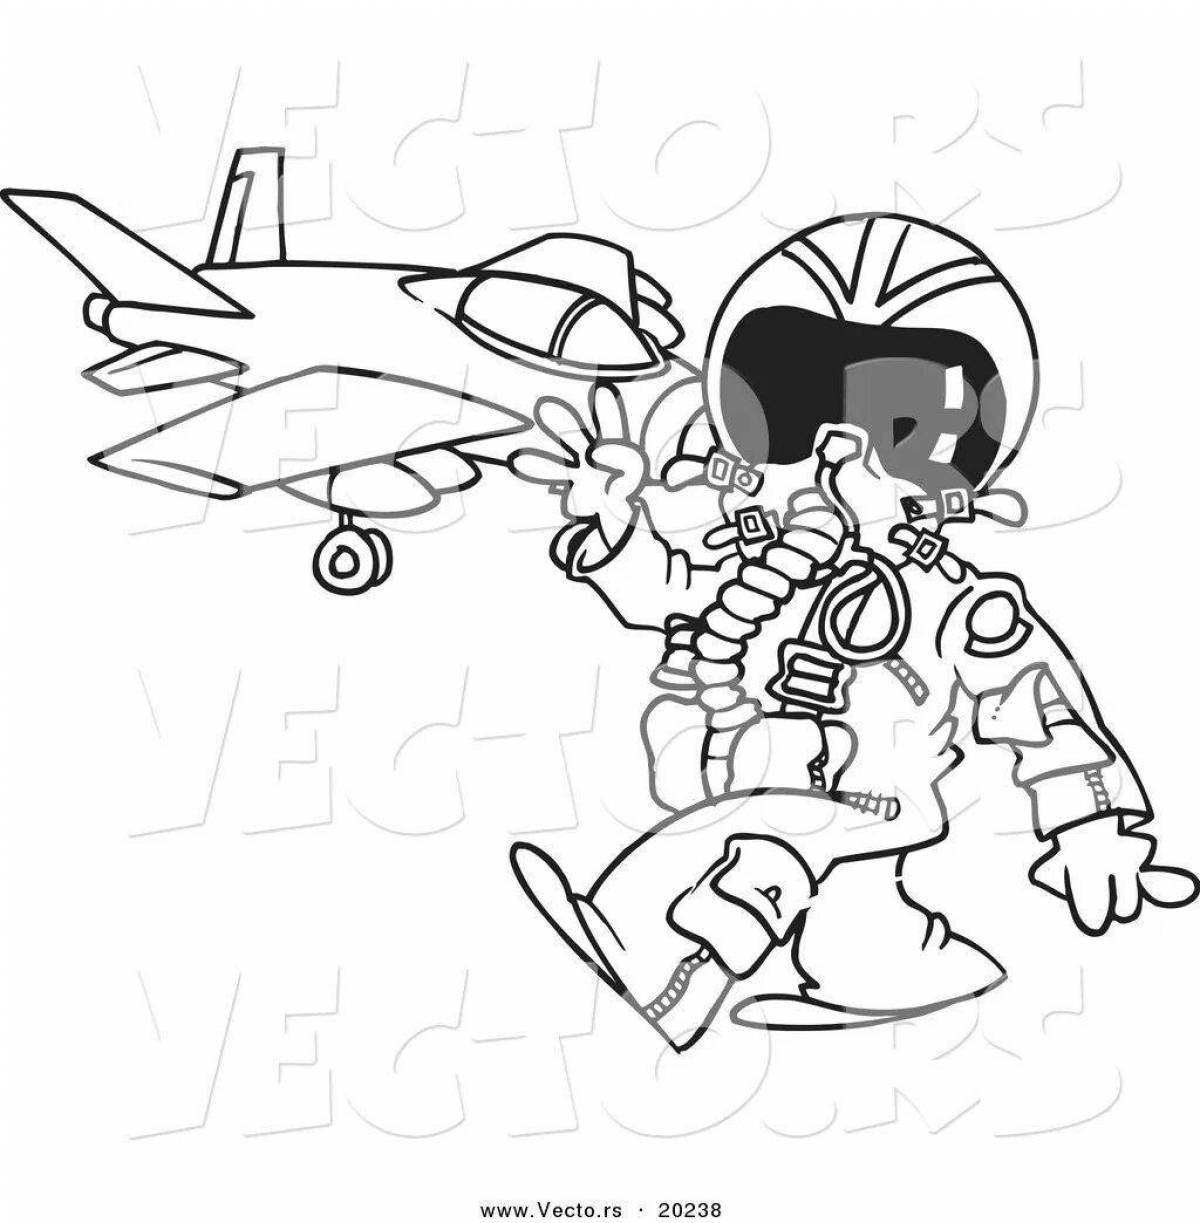 Милый военный летчик раскраски для детей